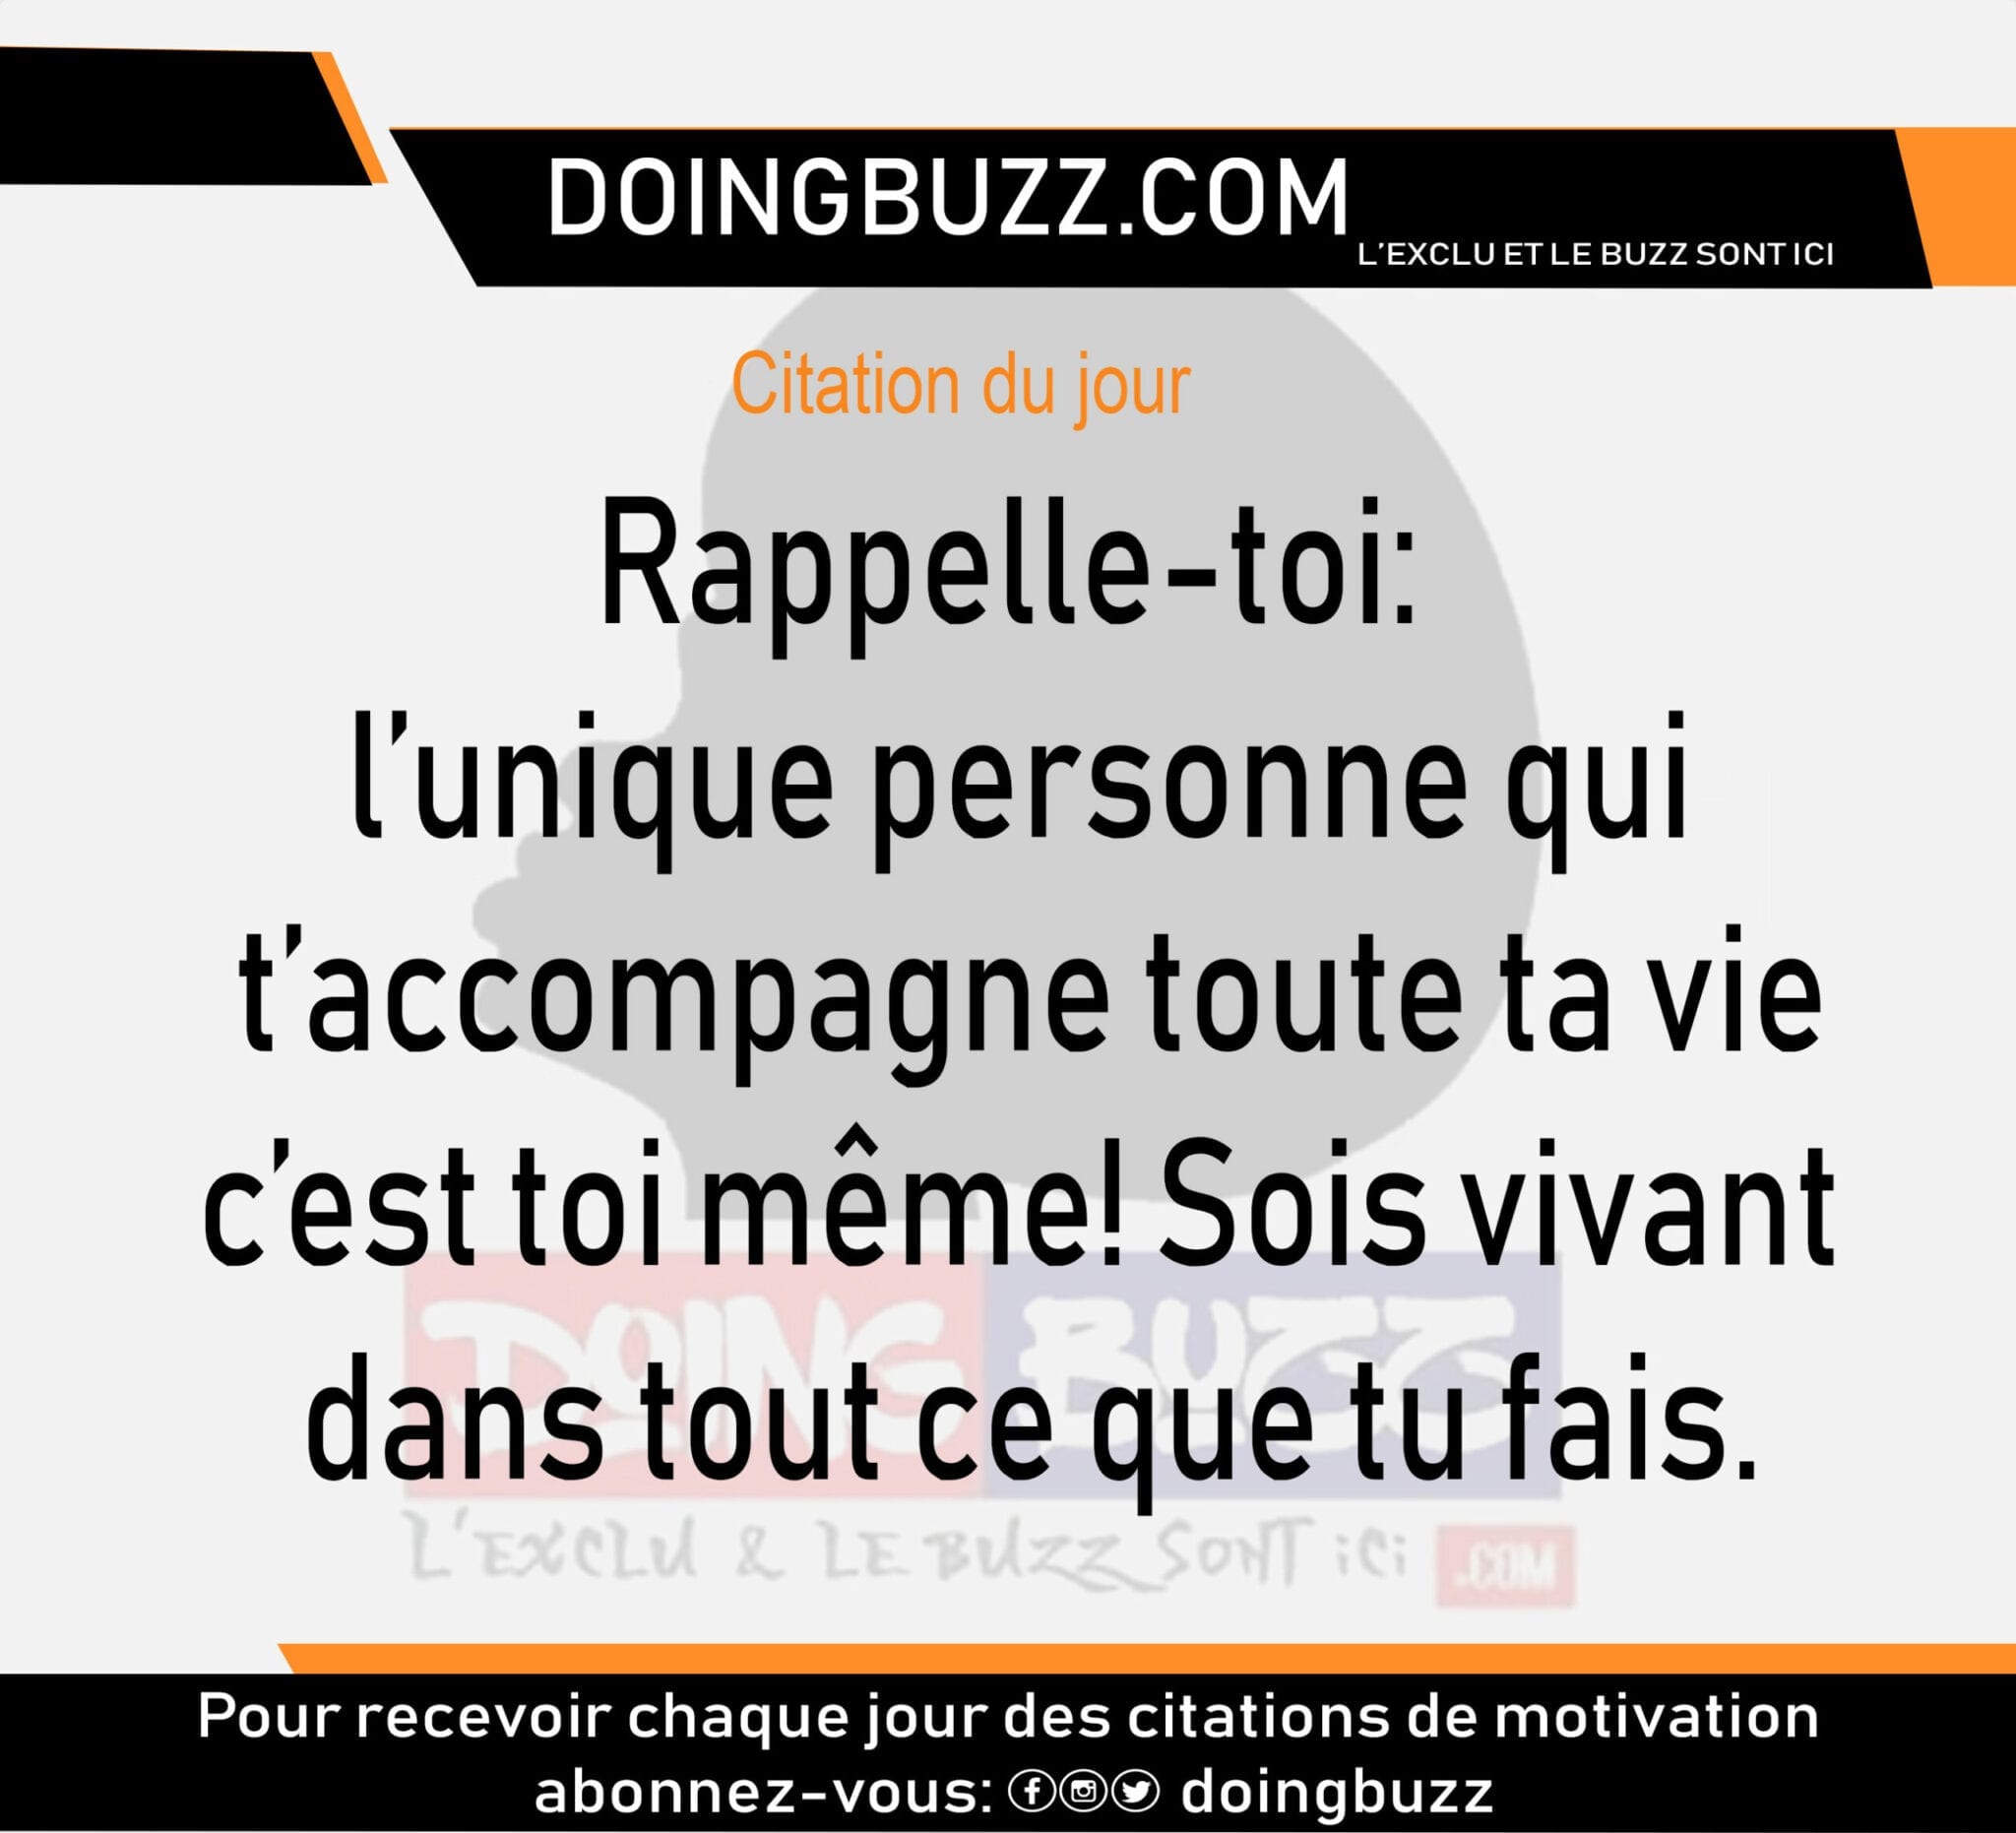 Citation Du Jour Doingbuzz Rappelle Toi L Unique Personne Qui T Accompagne Toute Ta Vie C Est Toi Meme Doingbuzz